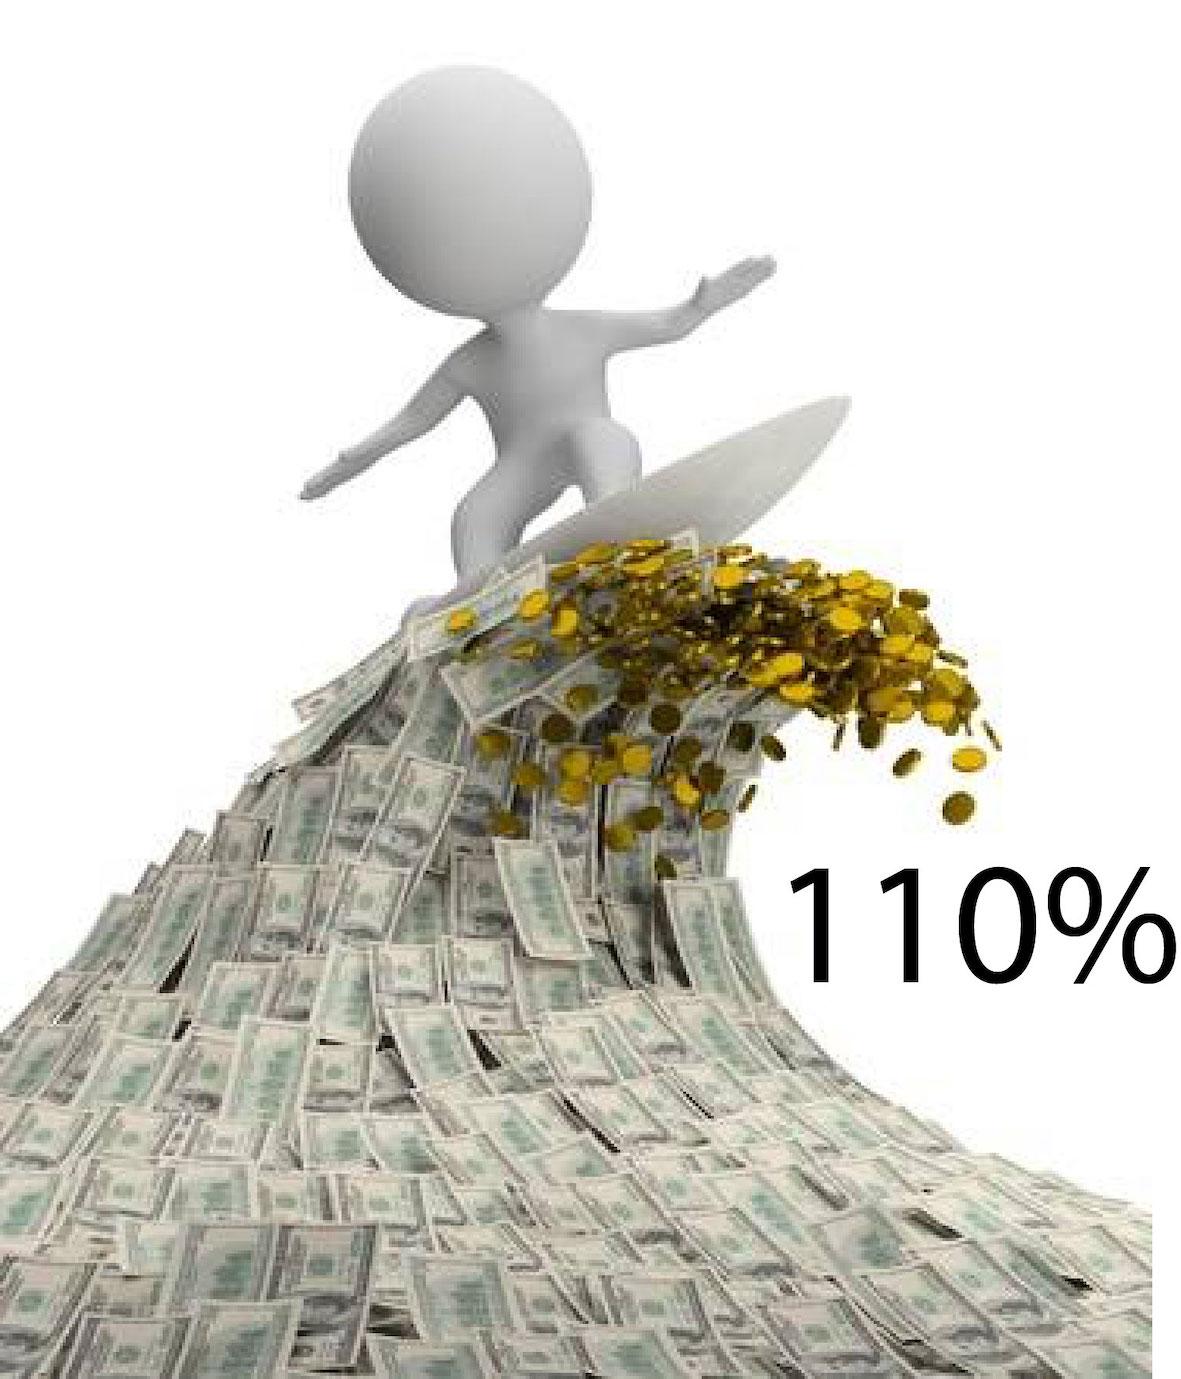 superbonus 110%: finanziamenti per avere liquidità